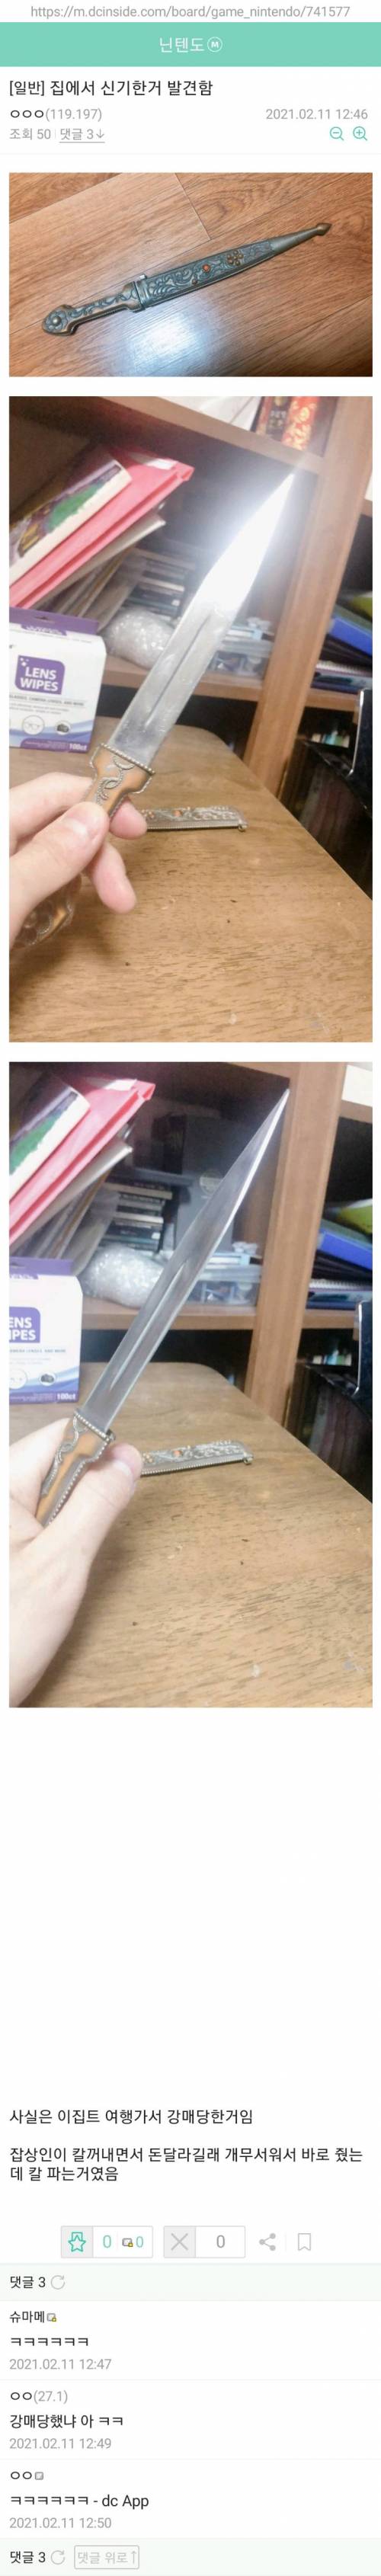 외국인에게 칼을 파는 획기적인 방법